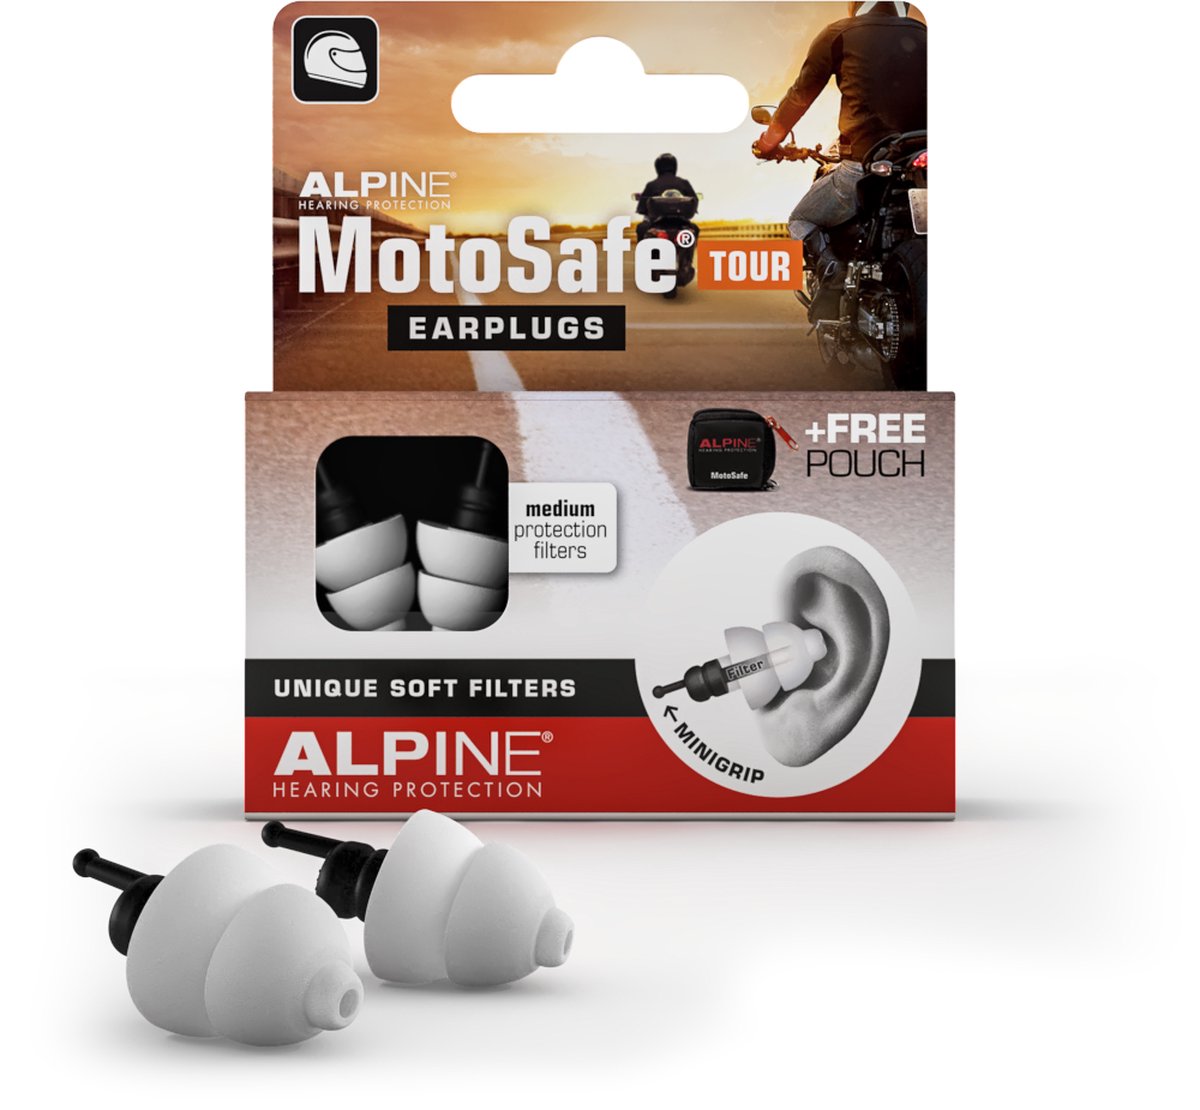 Alpine MotoSafe Tour - Motor oordoppen - Voorkomt gehoorschade tijdens het motorrijden - 17dB - Oordopjes tegen windruis - Premium Gehoorbescherming - Zwart - 1 paar - Alpine Hearing protection